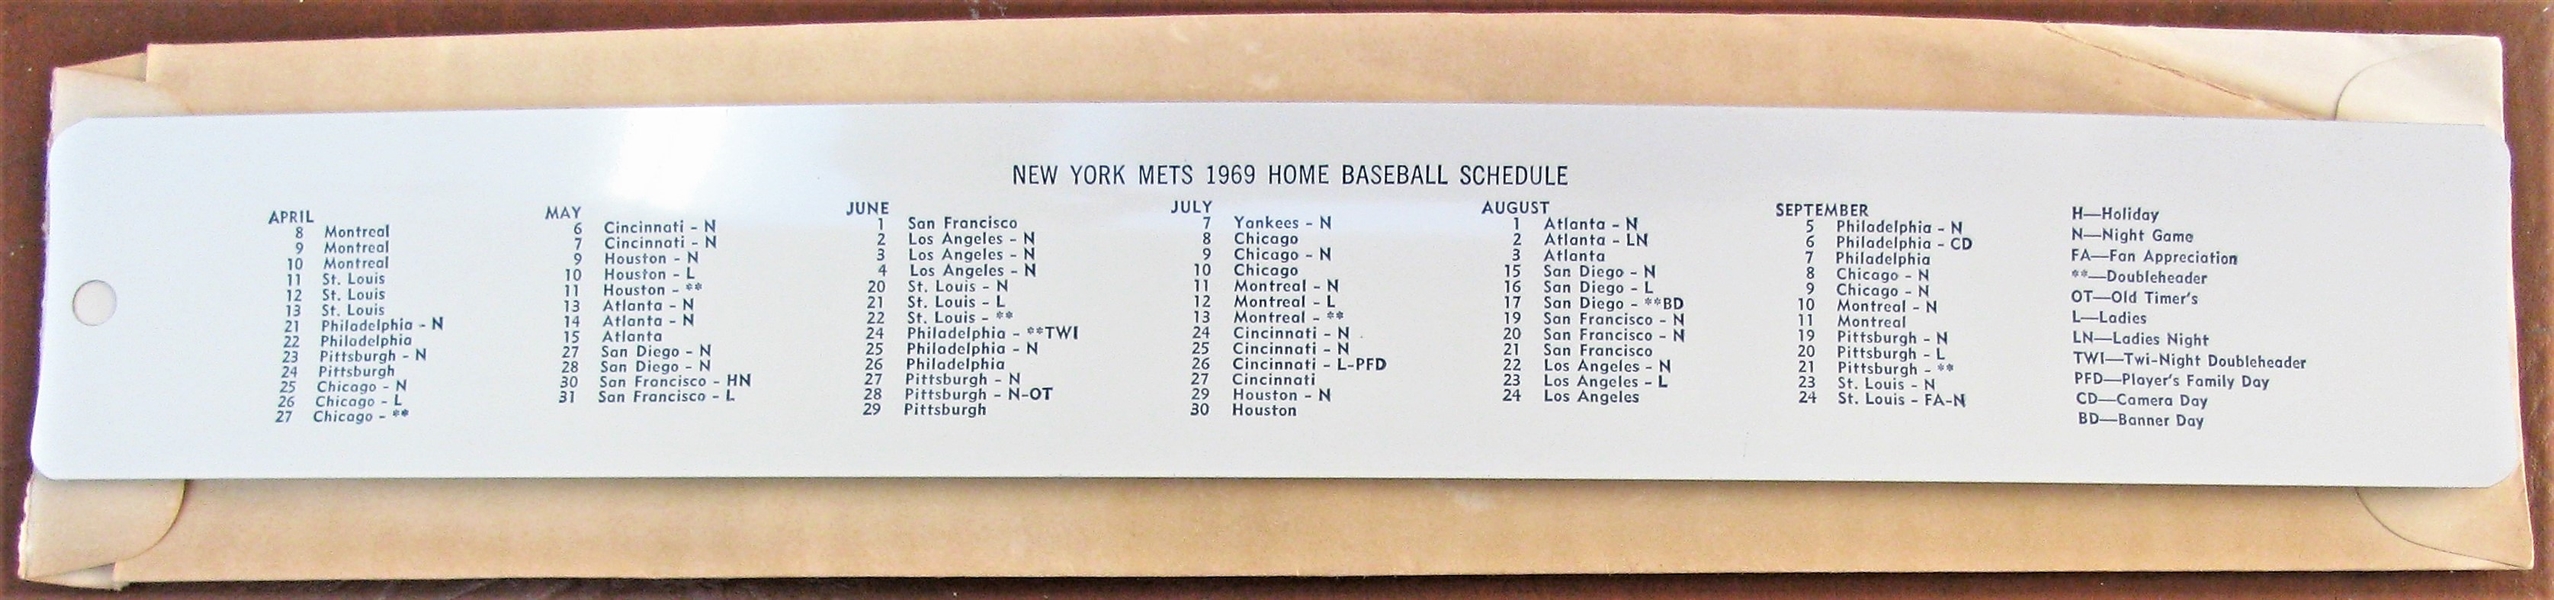 1969 NEW YORK METS BASEBALL SCHEDULE RULER IN ORIGINAL SLEEVE